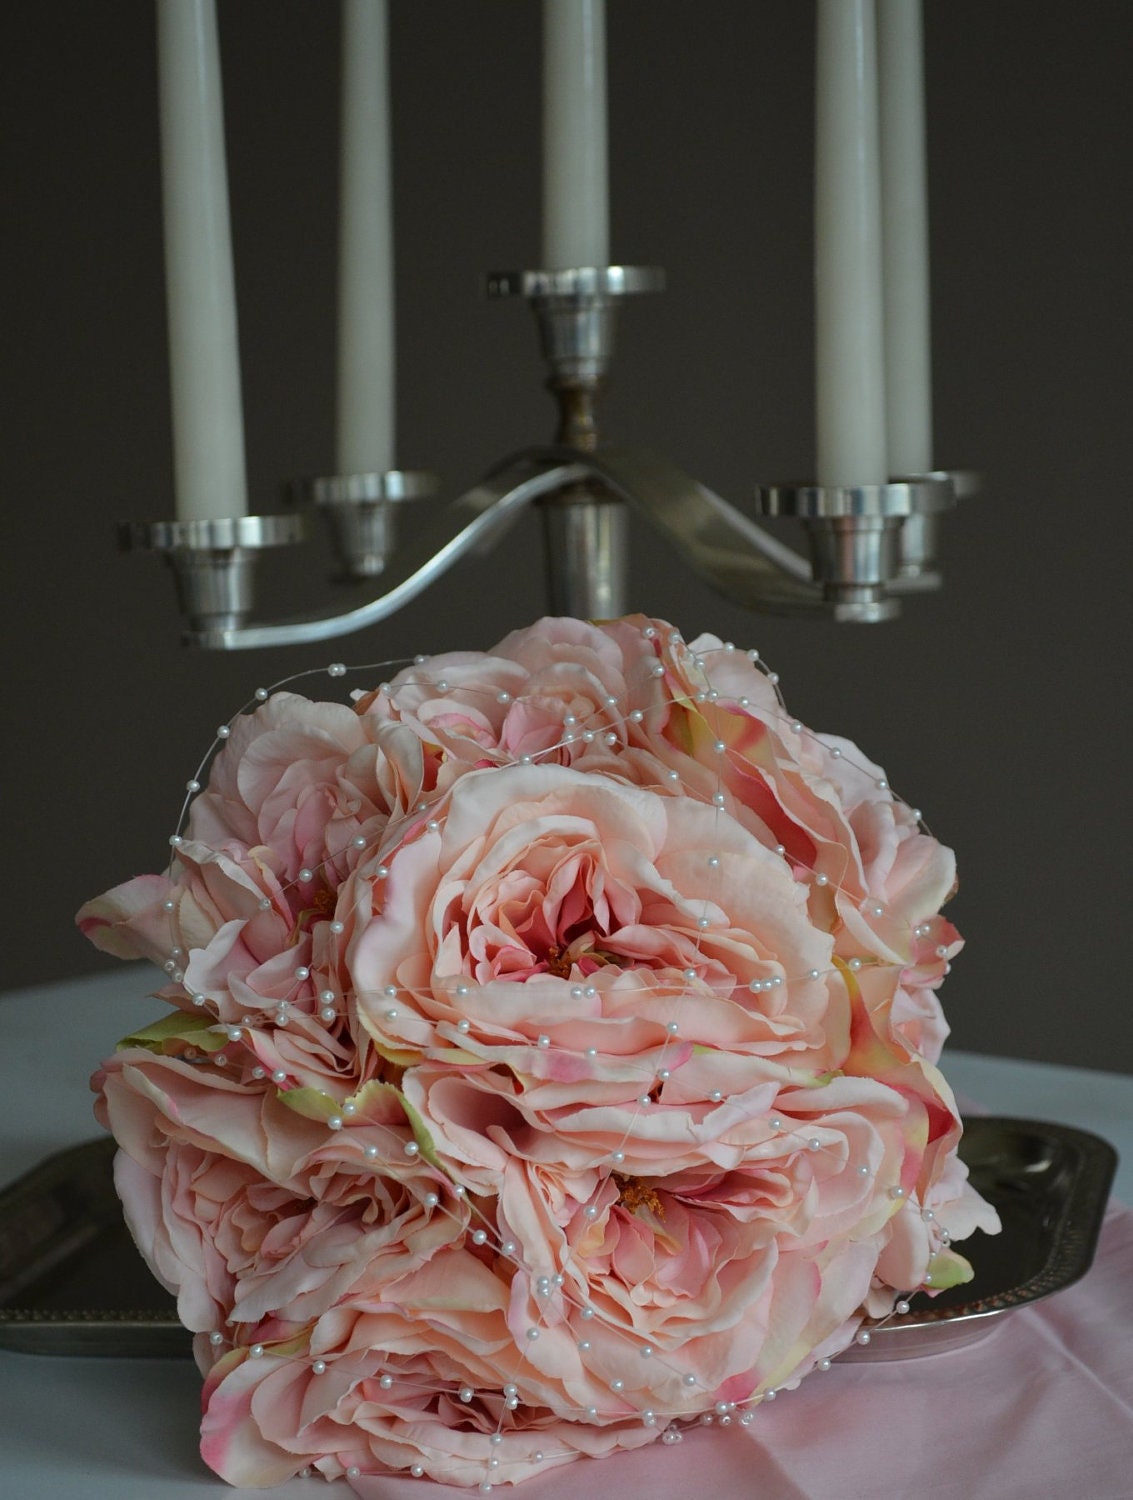 Garden Fresh Premium Rose Hand Tied Wedding Bouquet in Pink Gray with 